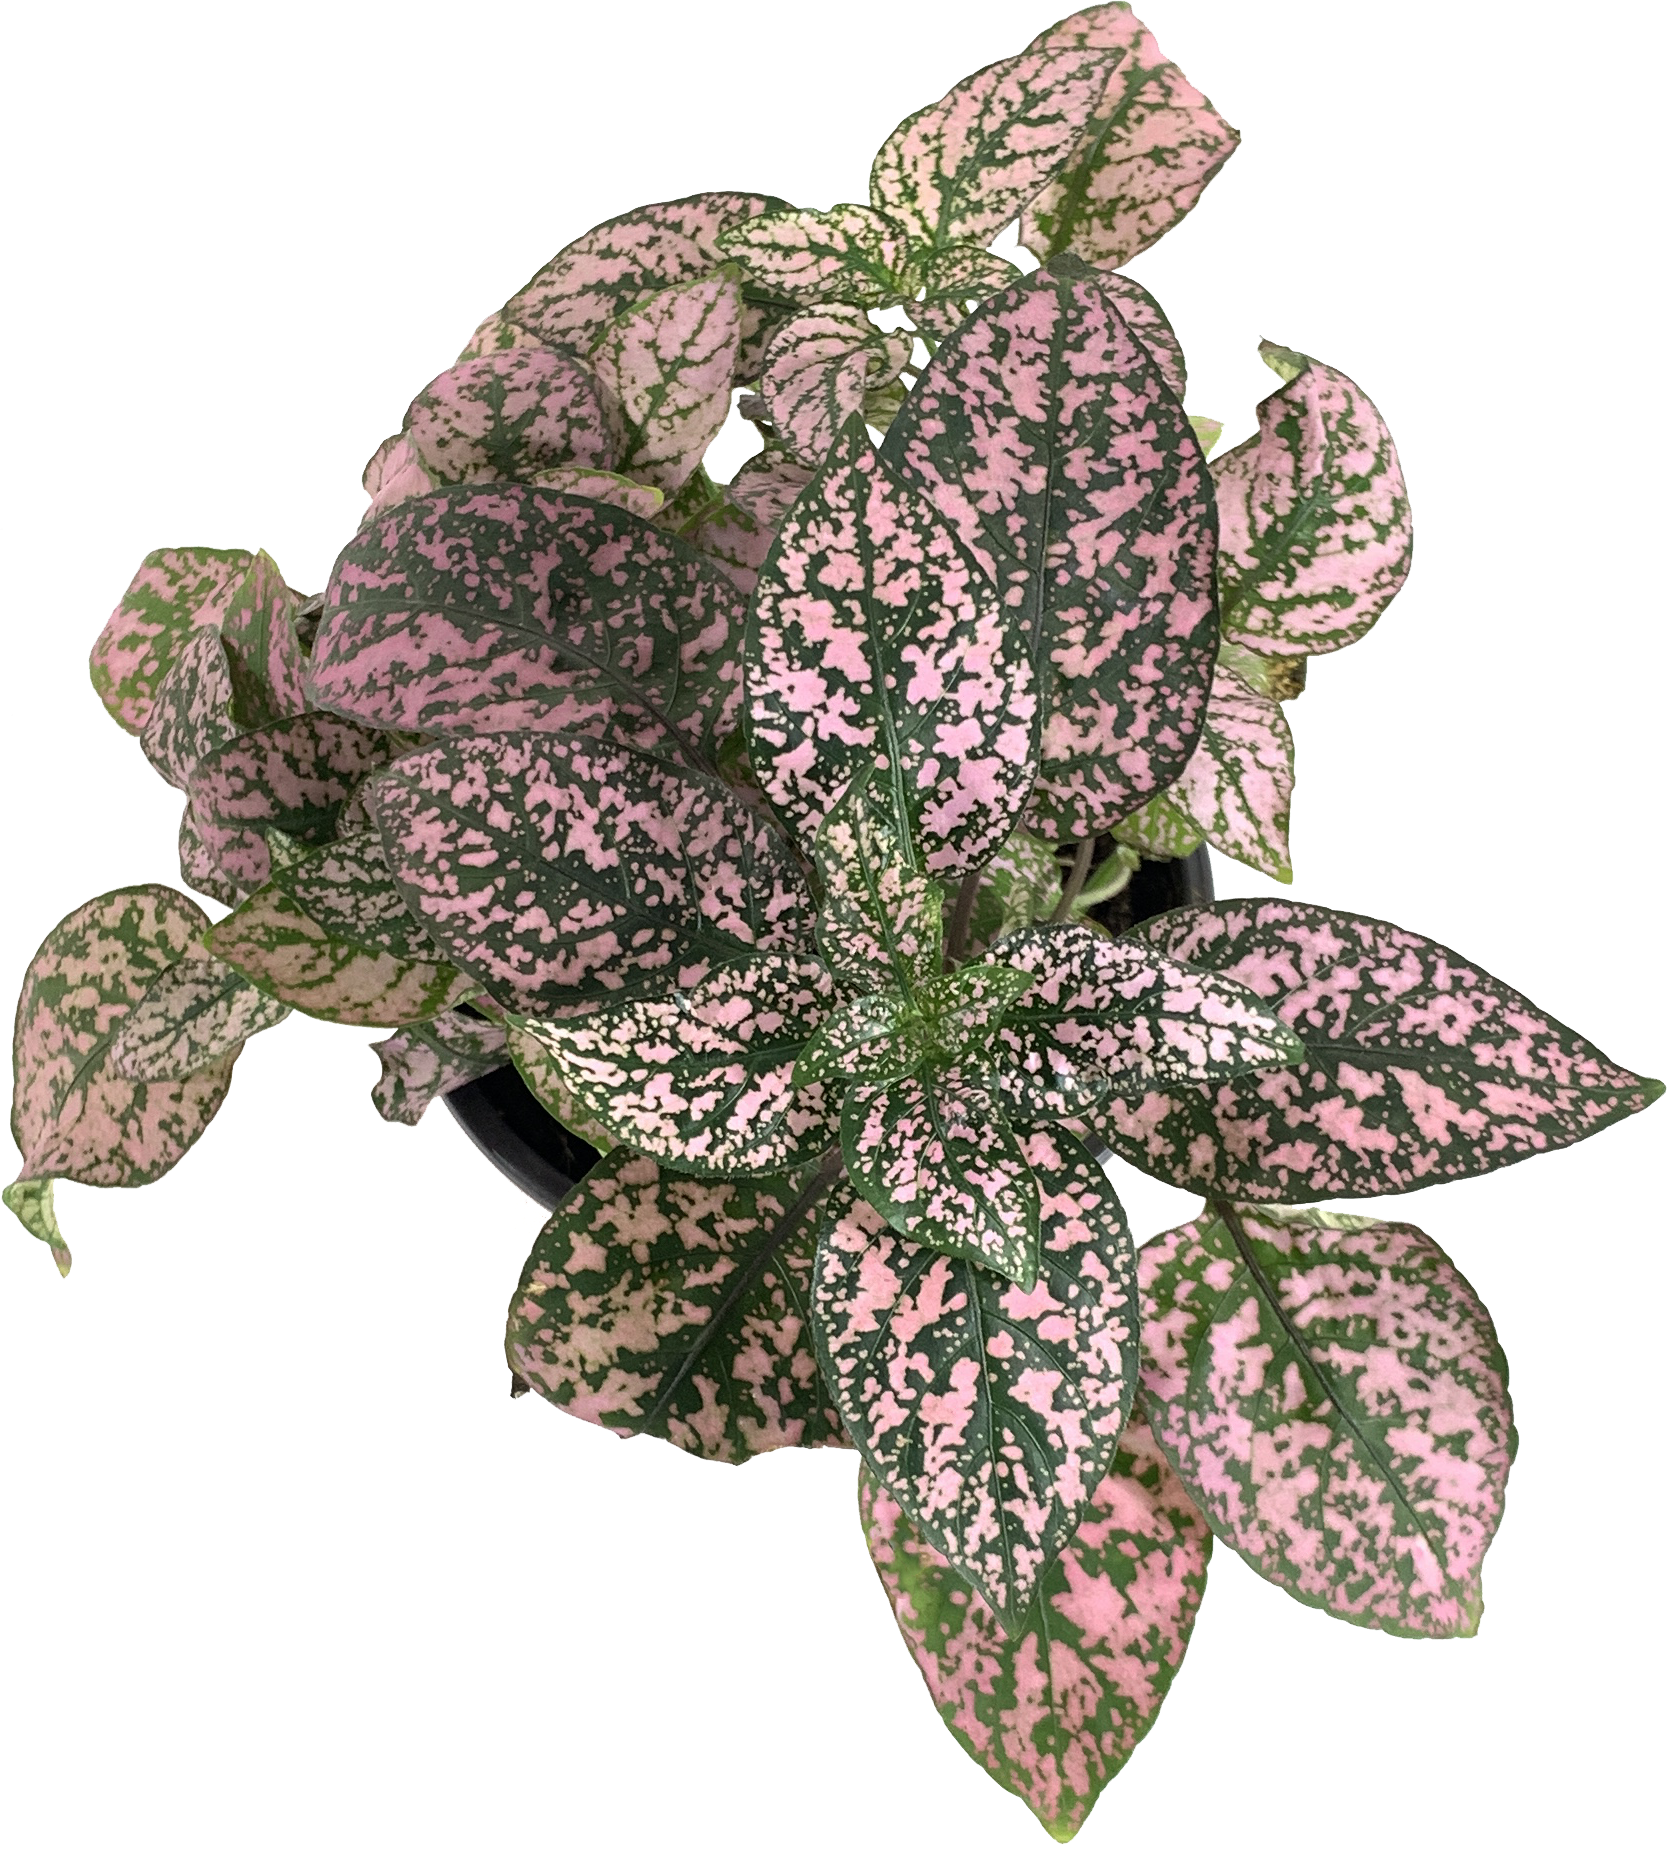 Assorted Polka Dot Plant, Hypoestes Phyllostachya